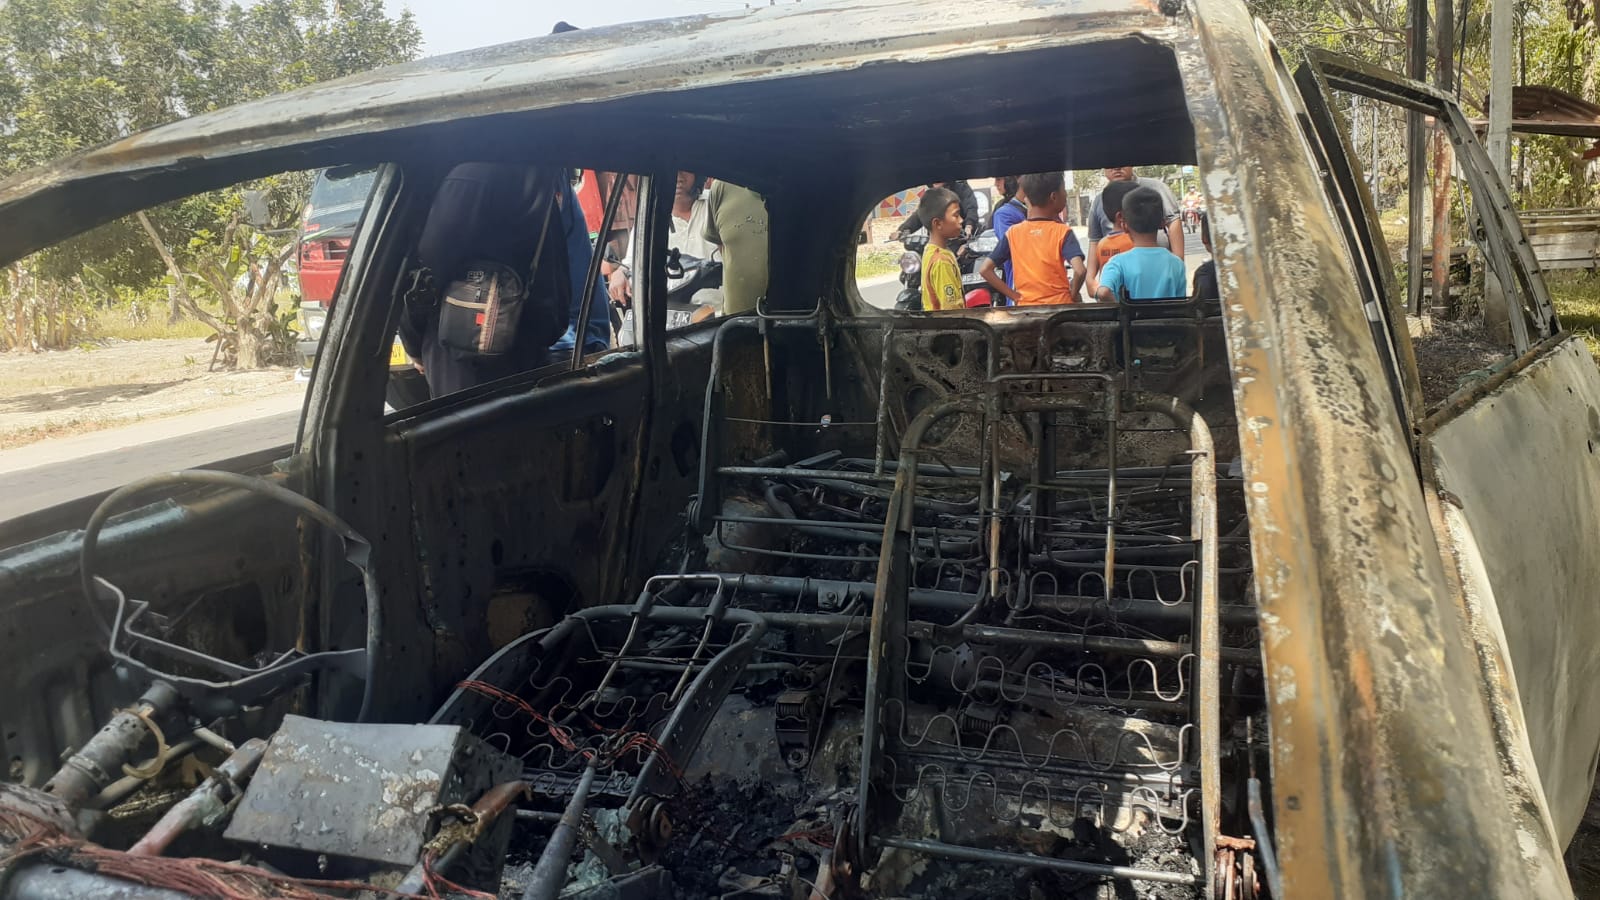 Kebakaran Mobil Toyota Innova di Jalan Lintas Martapura, Ini Penjelasan Saksi Mata dan Evakuasi Sopir